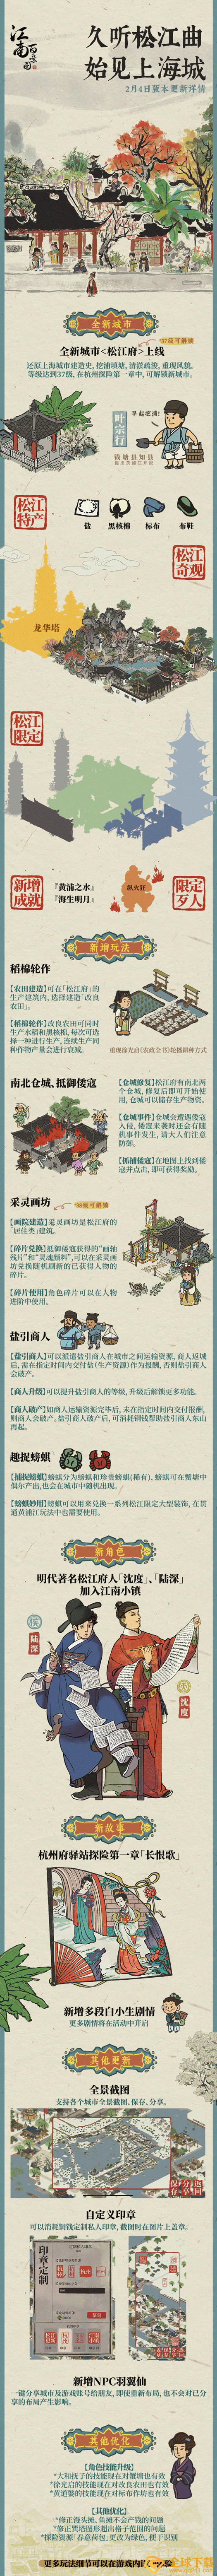 《江南百景图》1.4.0新版本松江府新增内容一览